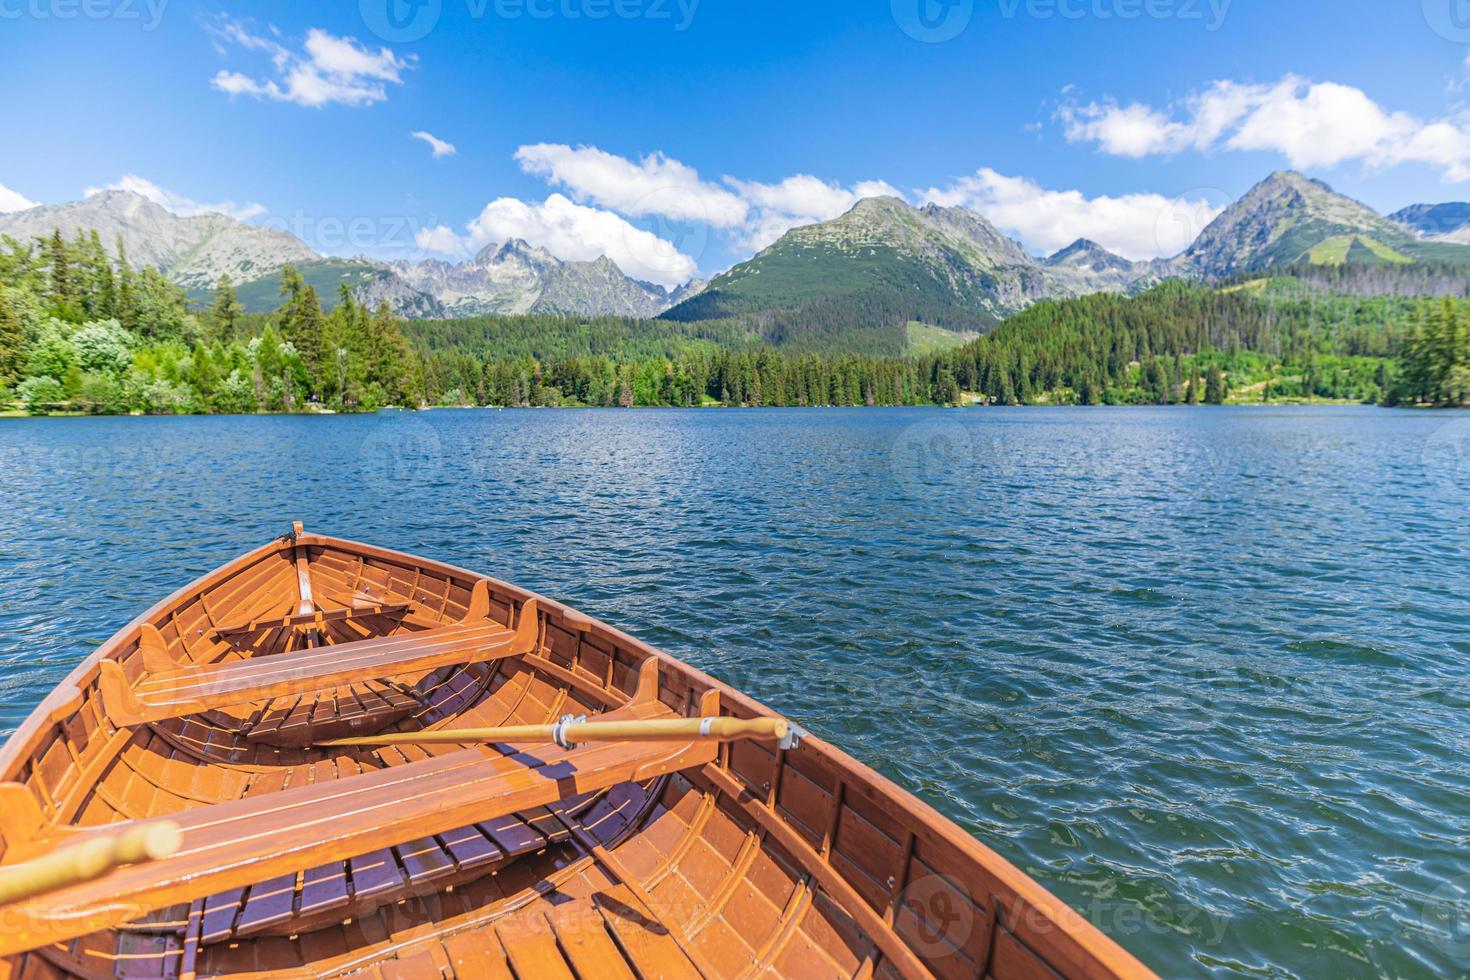 lago de montaña con bosque de coníferas, barco de madera cielo azul soleado, idílico fondo de viaje de libertad. lugar turístico romántico. parque nacional high tatras, europa. hermosa naturaleza paisaje vista idílica foto